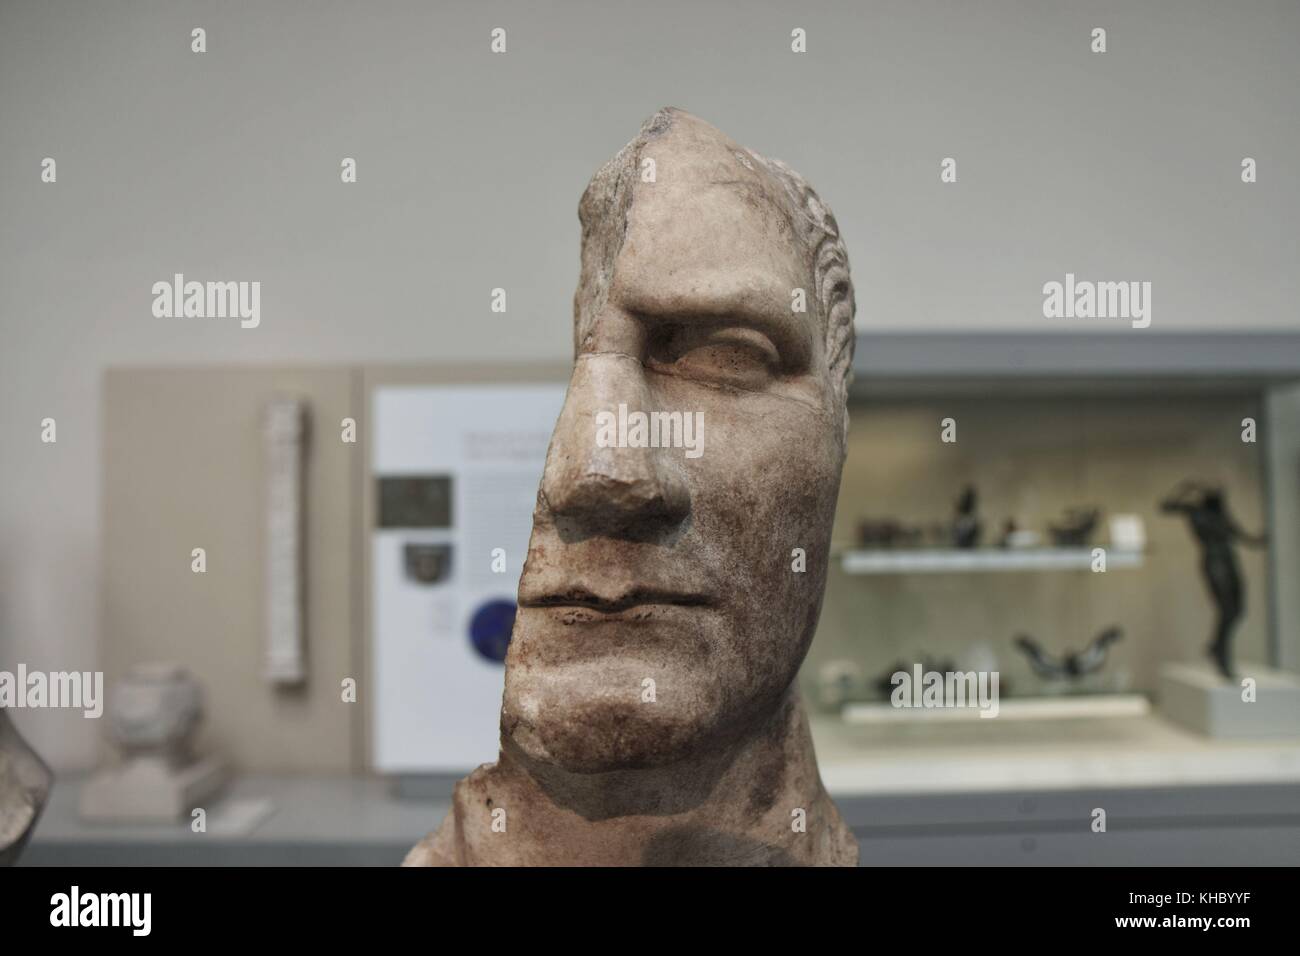 British Museum, London - 2 Aug 2008 - Disfigured sculptures of Roman Emperors: Julius Caesar 48BC Stock Photo